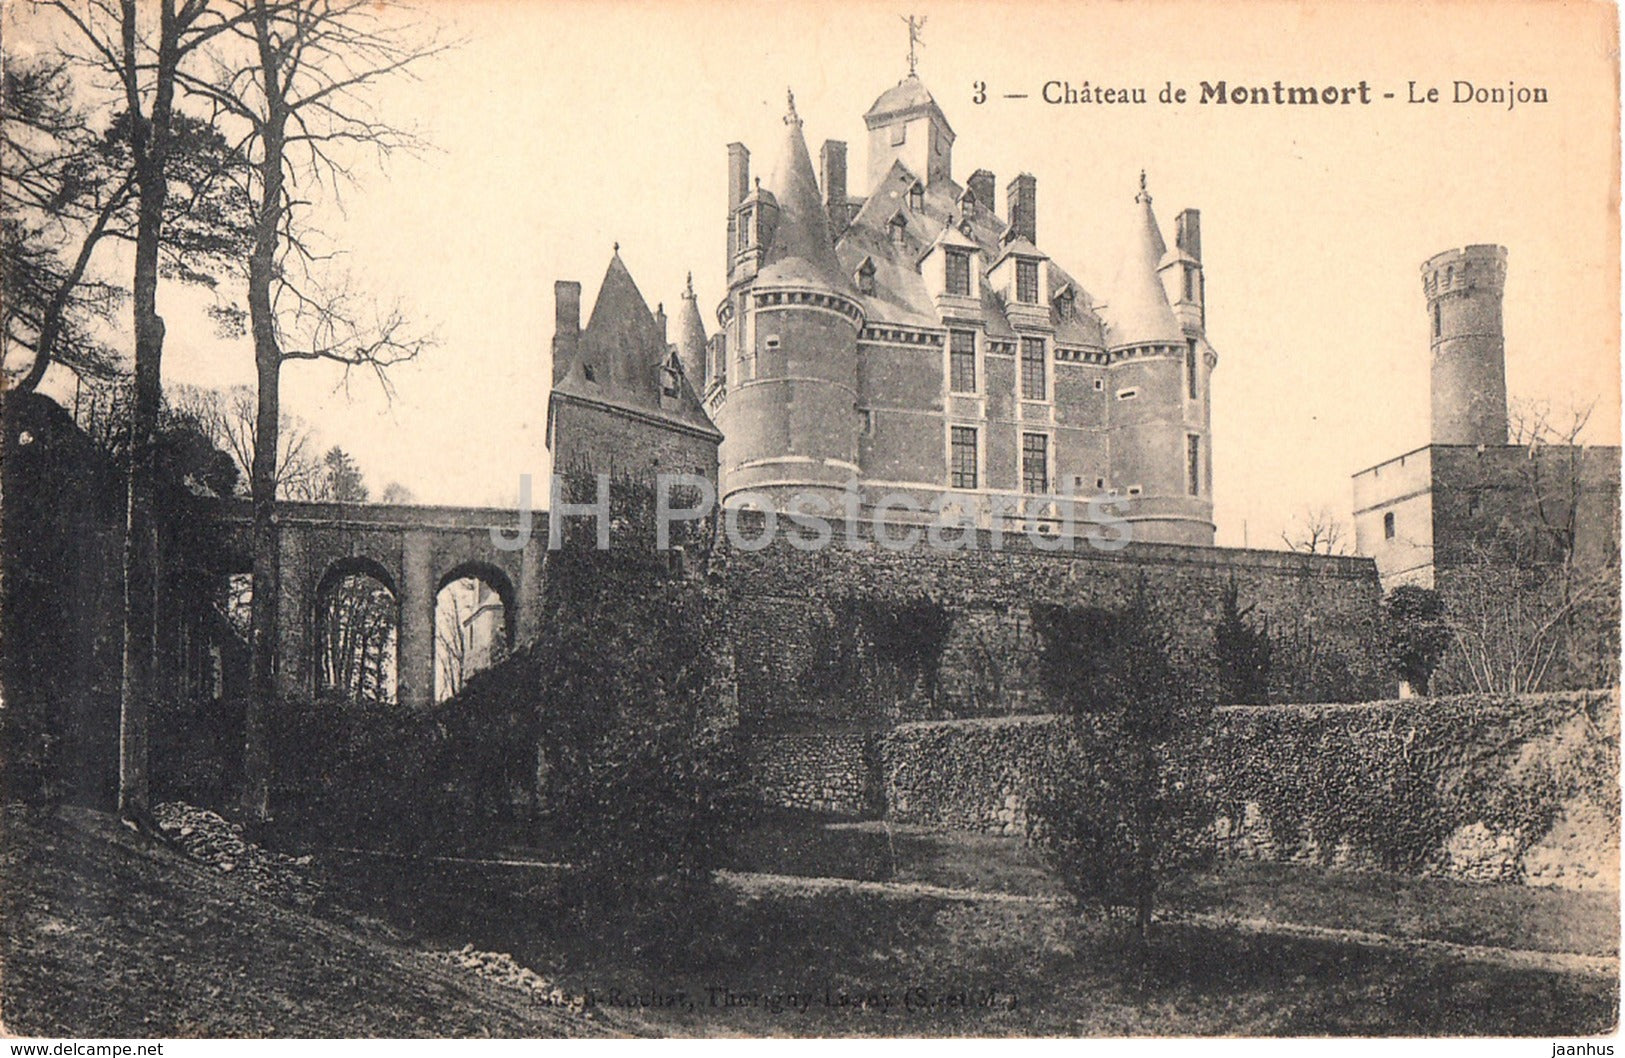 Chateau de Montmort - Le Donjon - 3 - castle - old postcard - France - unused